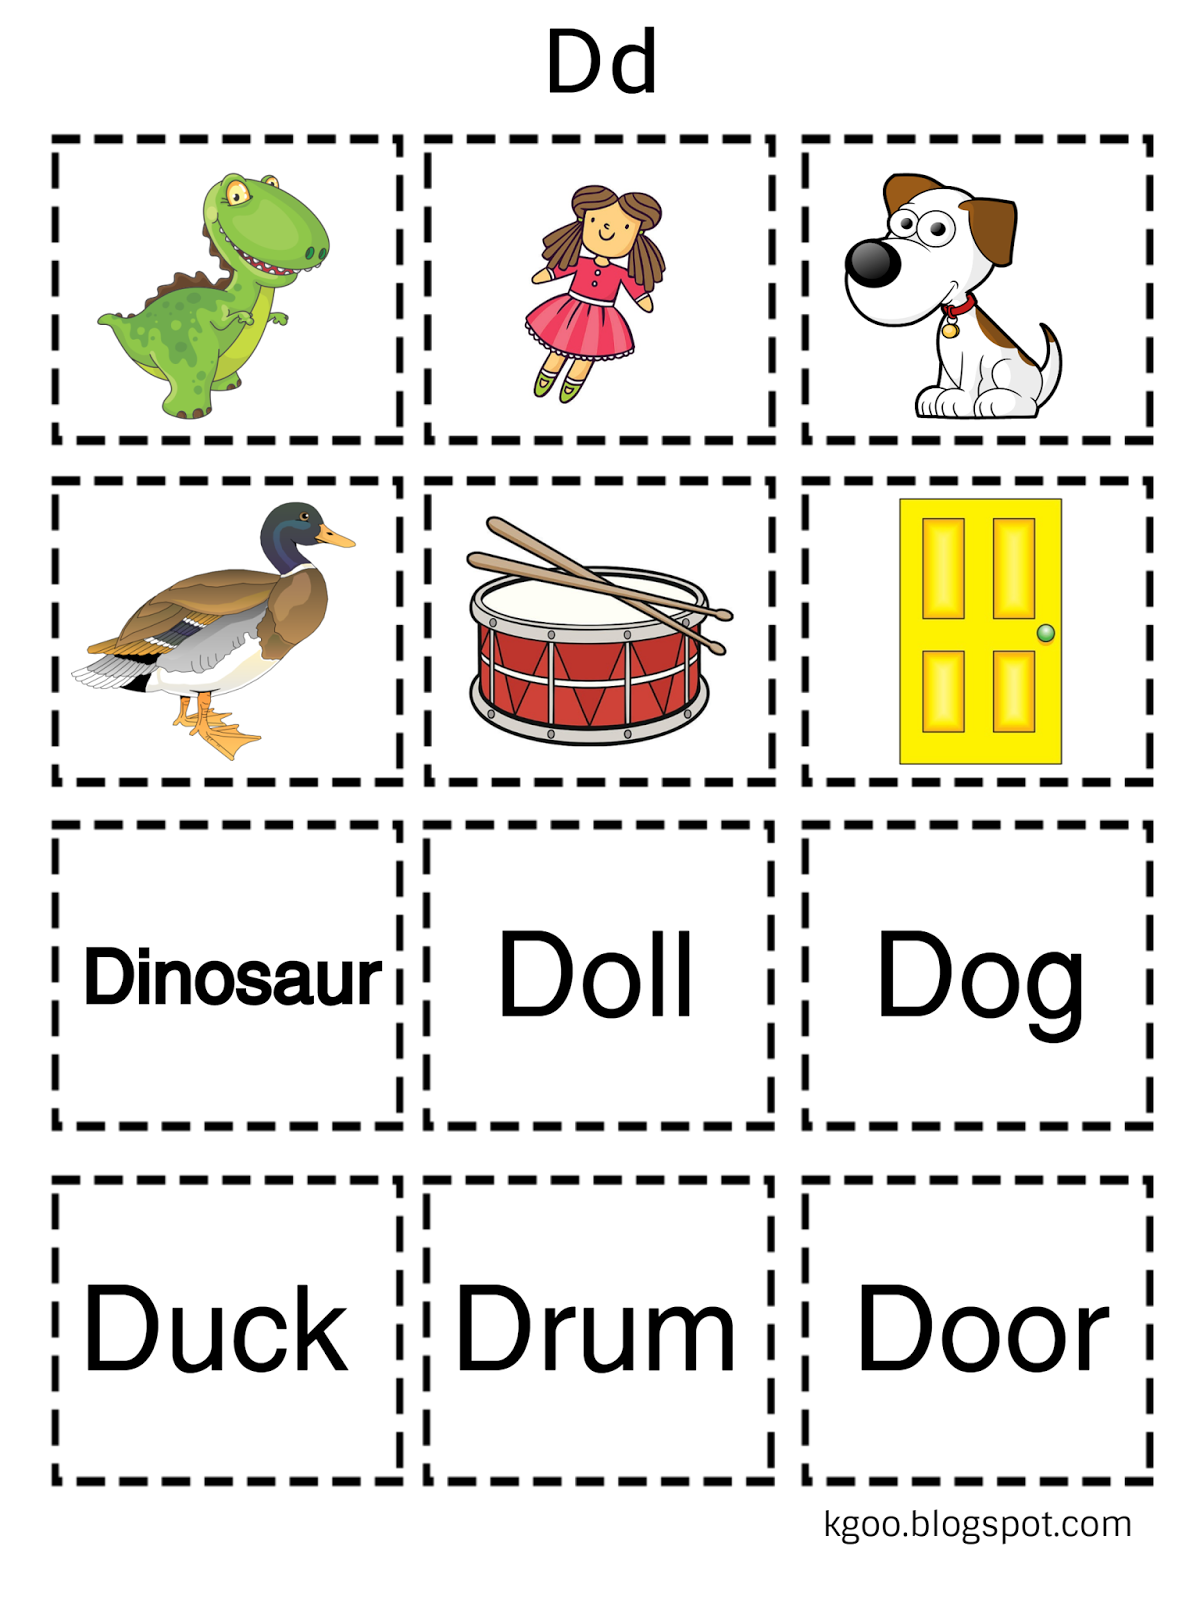 تمارين متنوعة وأوراق عمل لشرح حرف d للأطفال